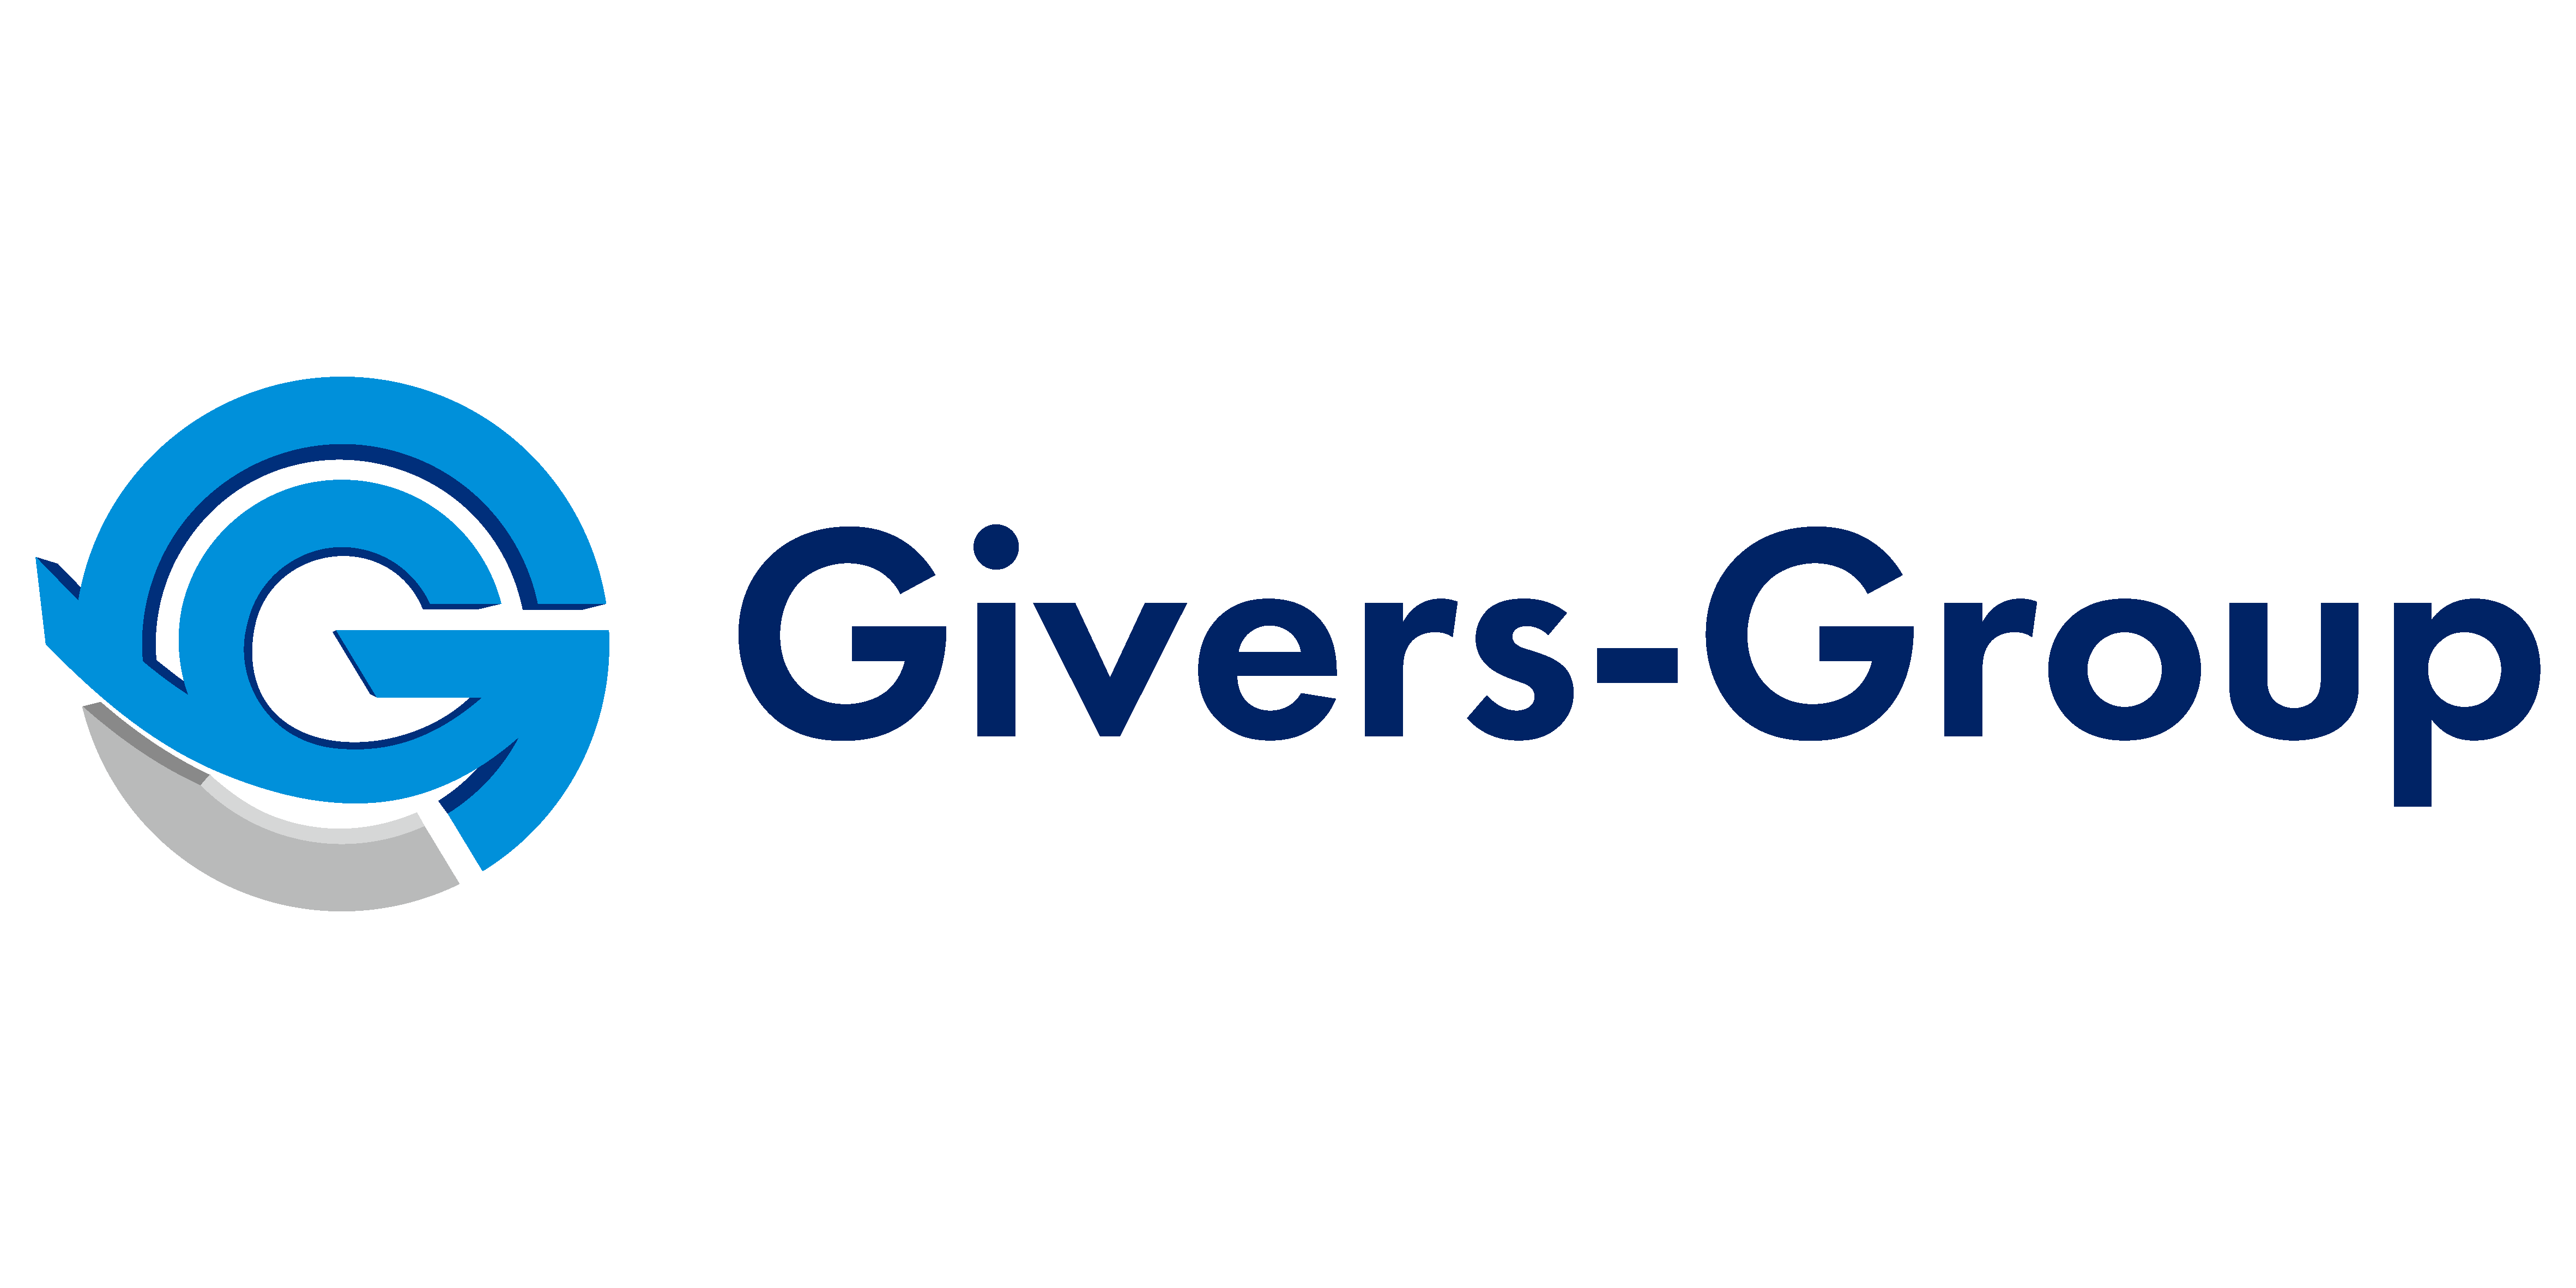 株式会社Givers-Group 会社ロゴ